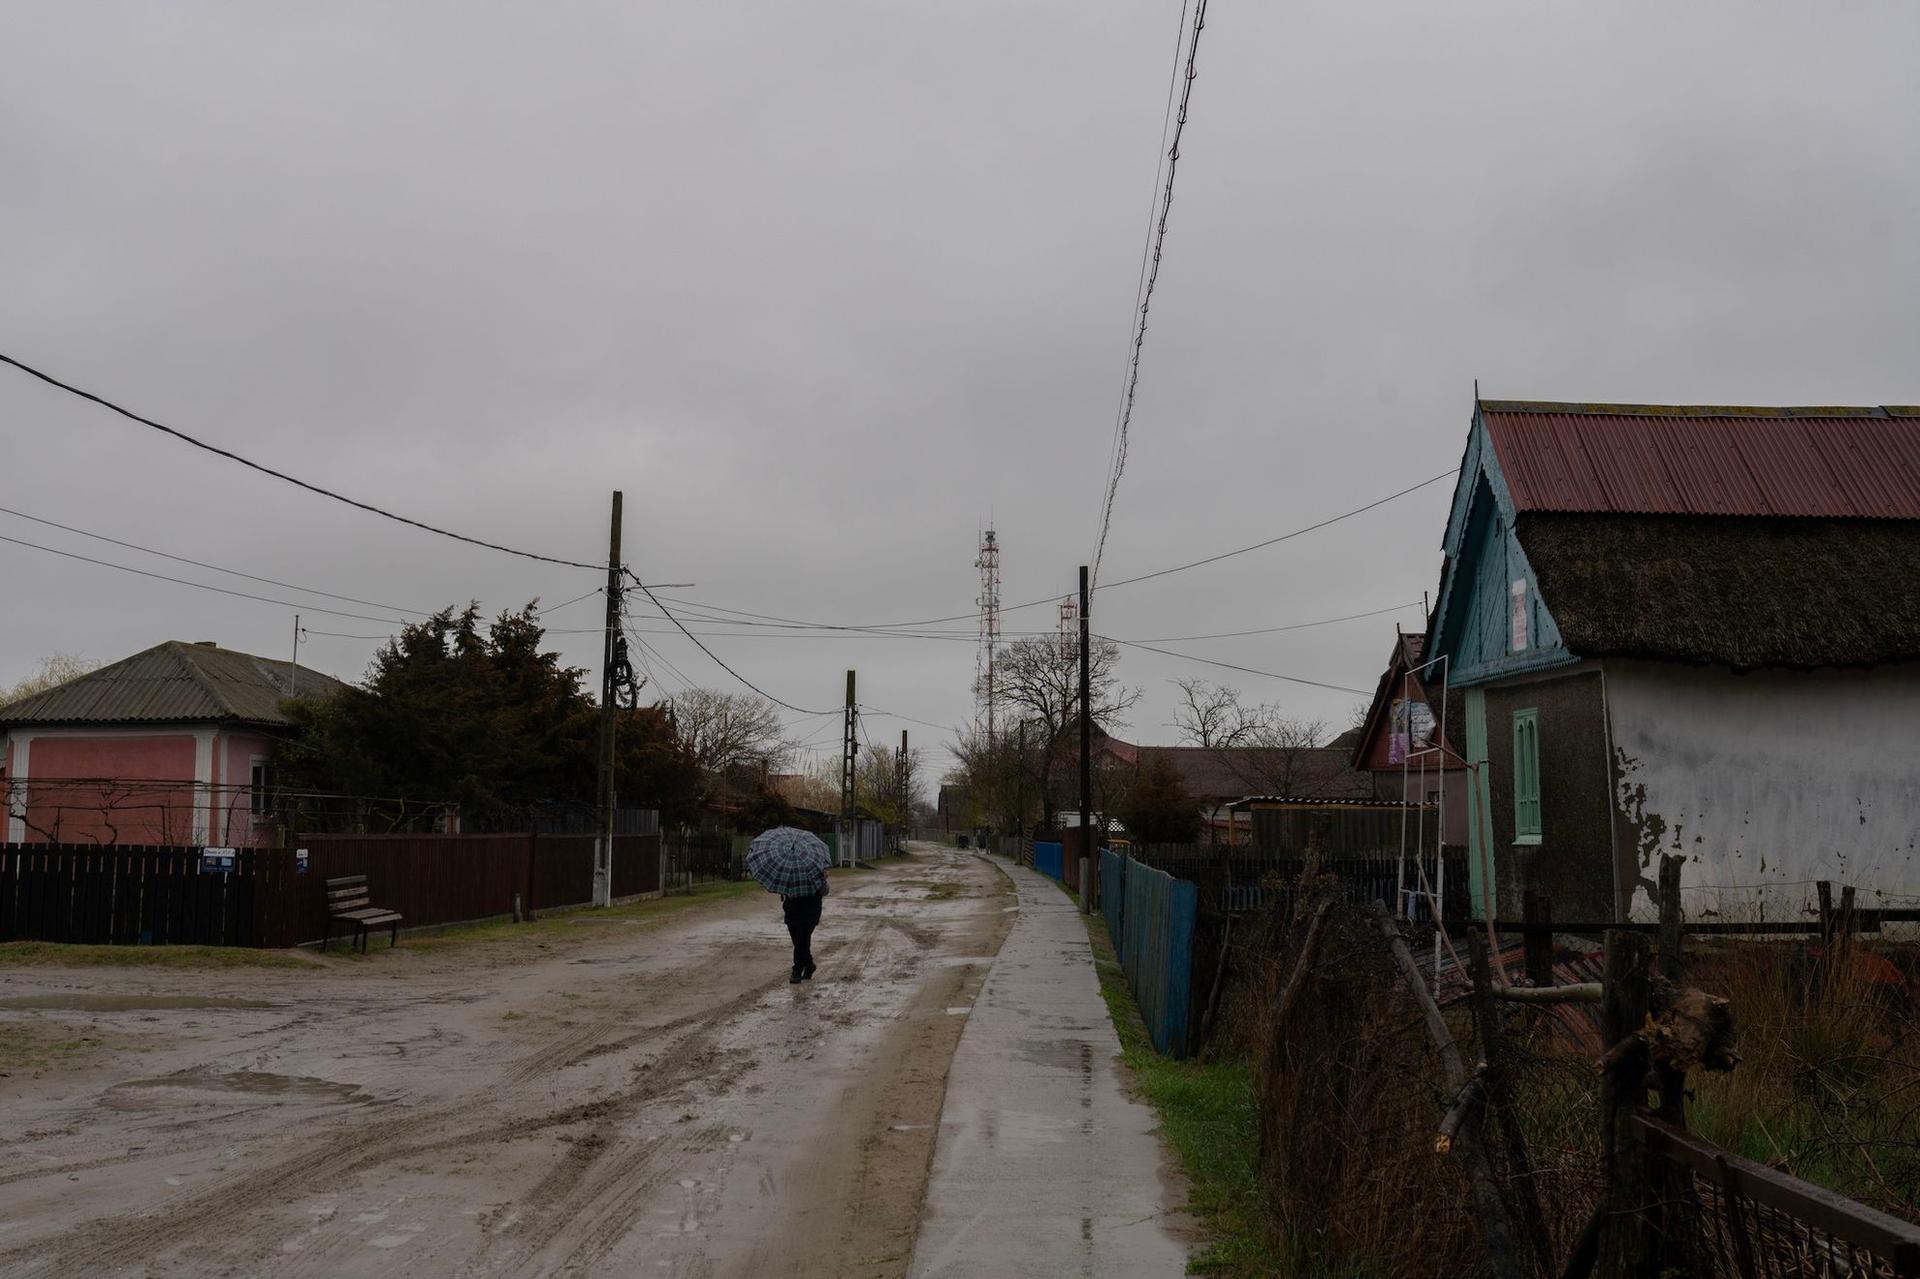 Strada I din Sfântu Gheorghe, comună din județul Tulcea cu o populație de aproximativ 600 de locuitori. Foto: Andreea Câmpeanu